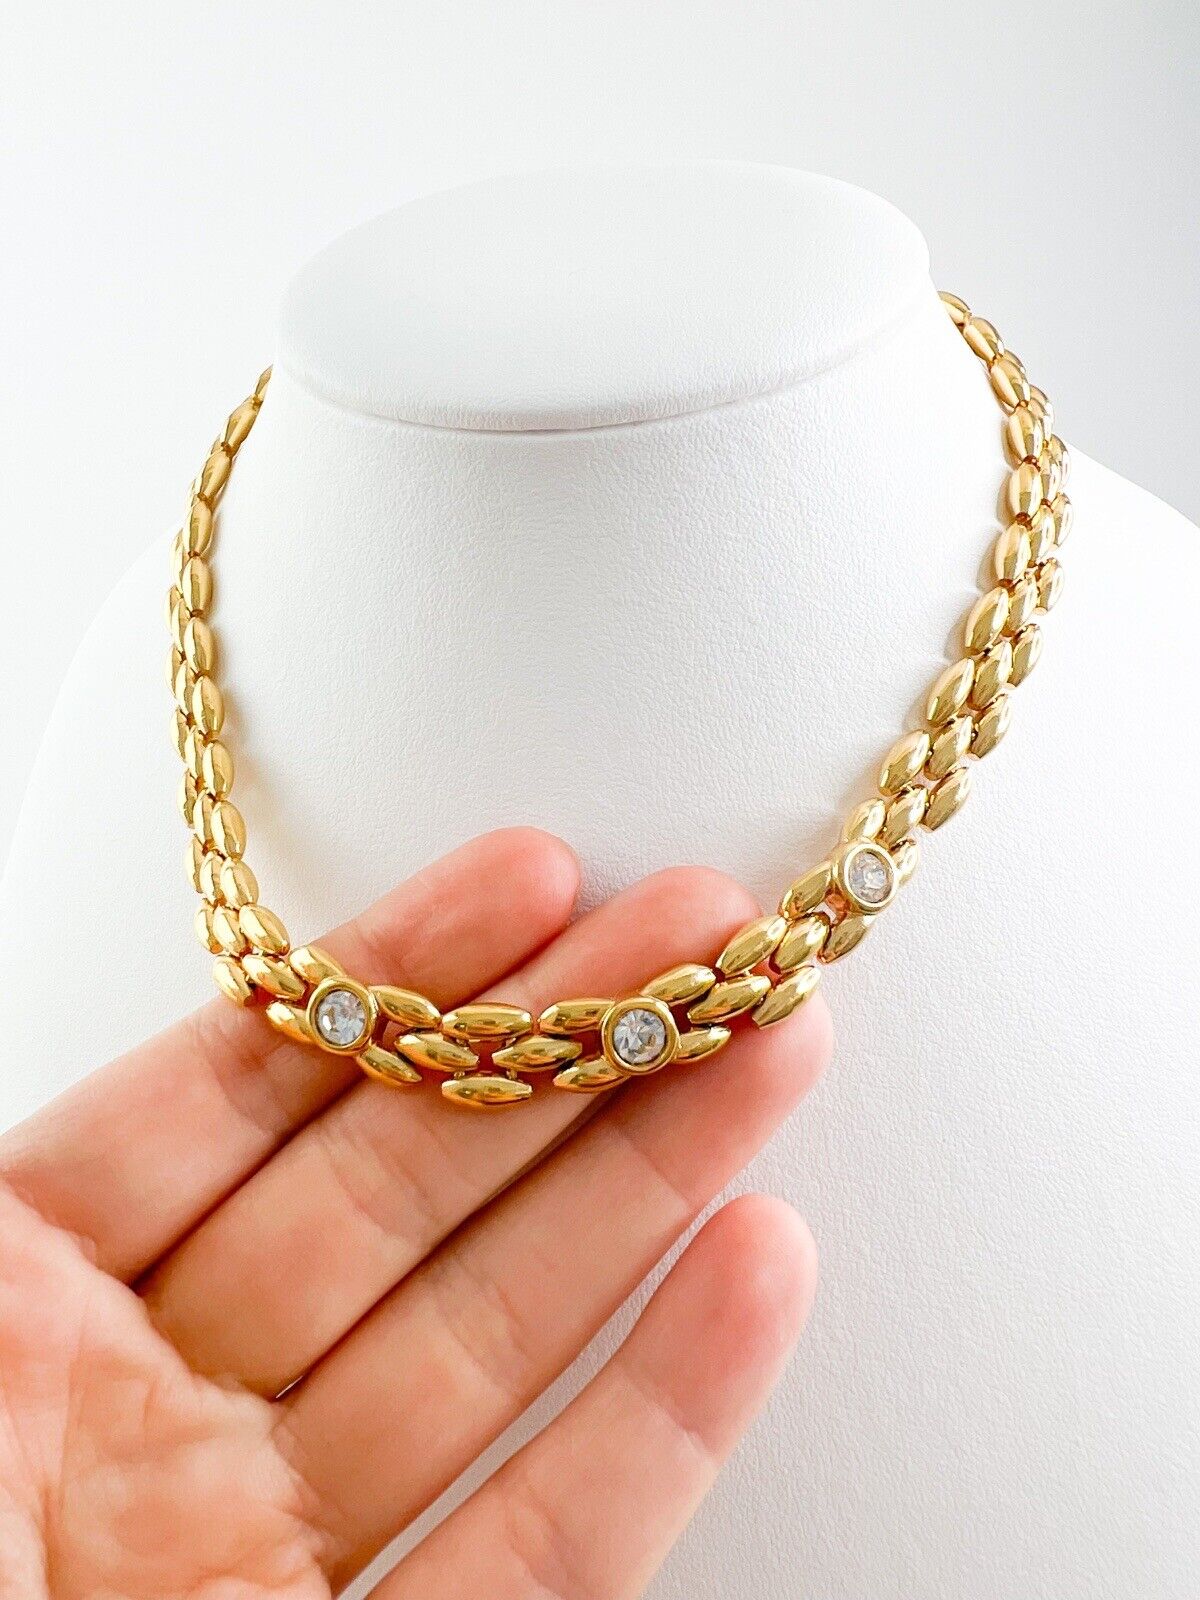 Christian Dior Vintage Necklace Gold